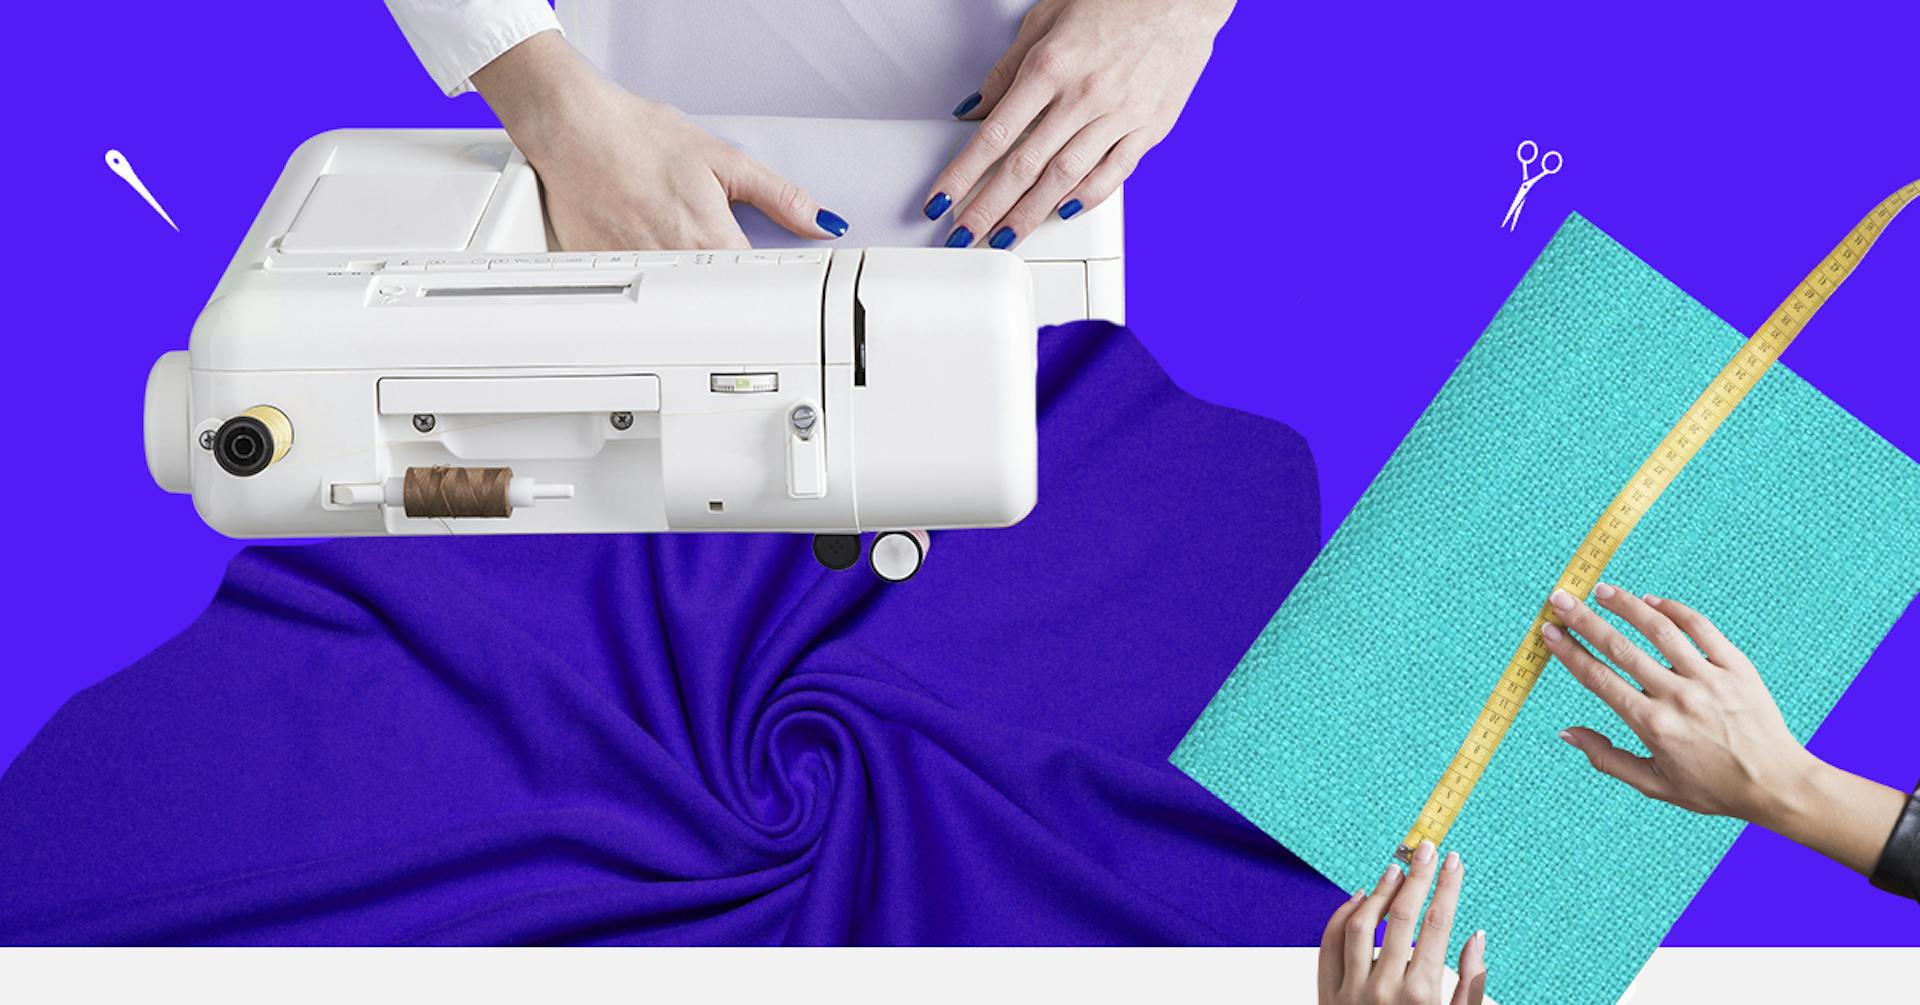 Conoce las mejores máquinas de coser y tus primeras prendas parecerán profesionales